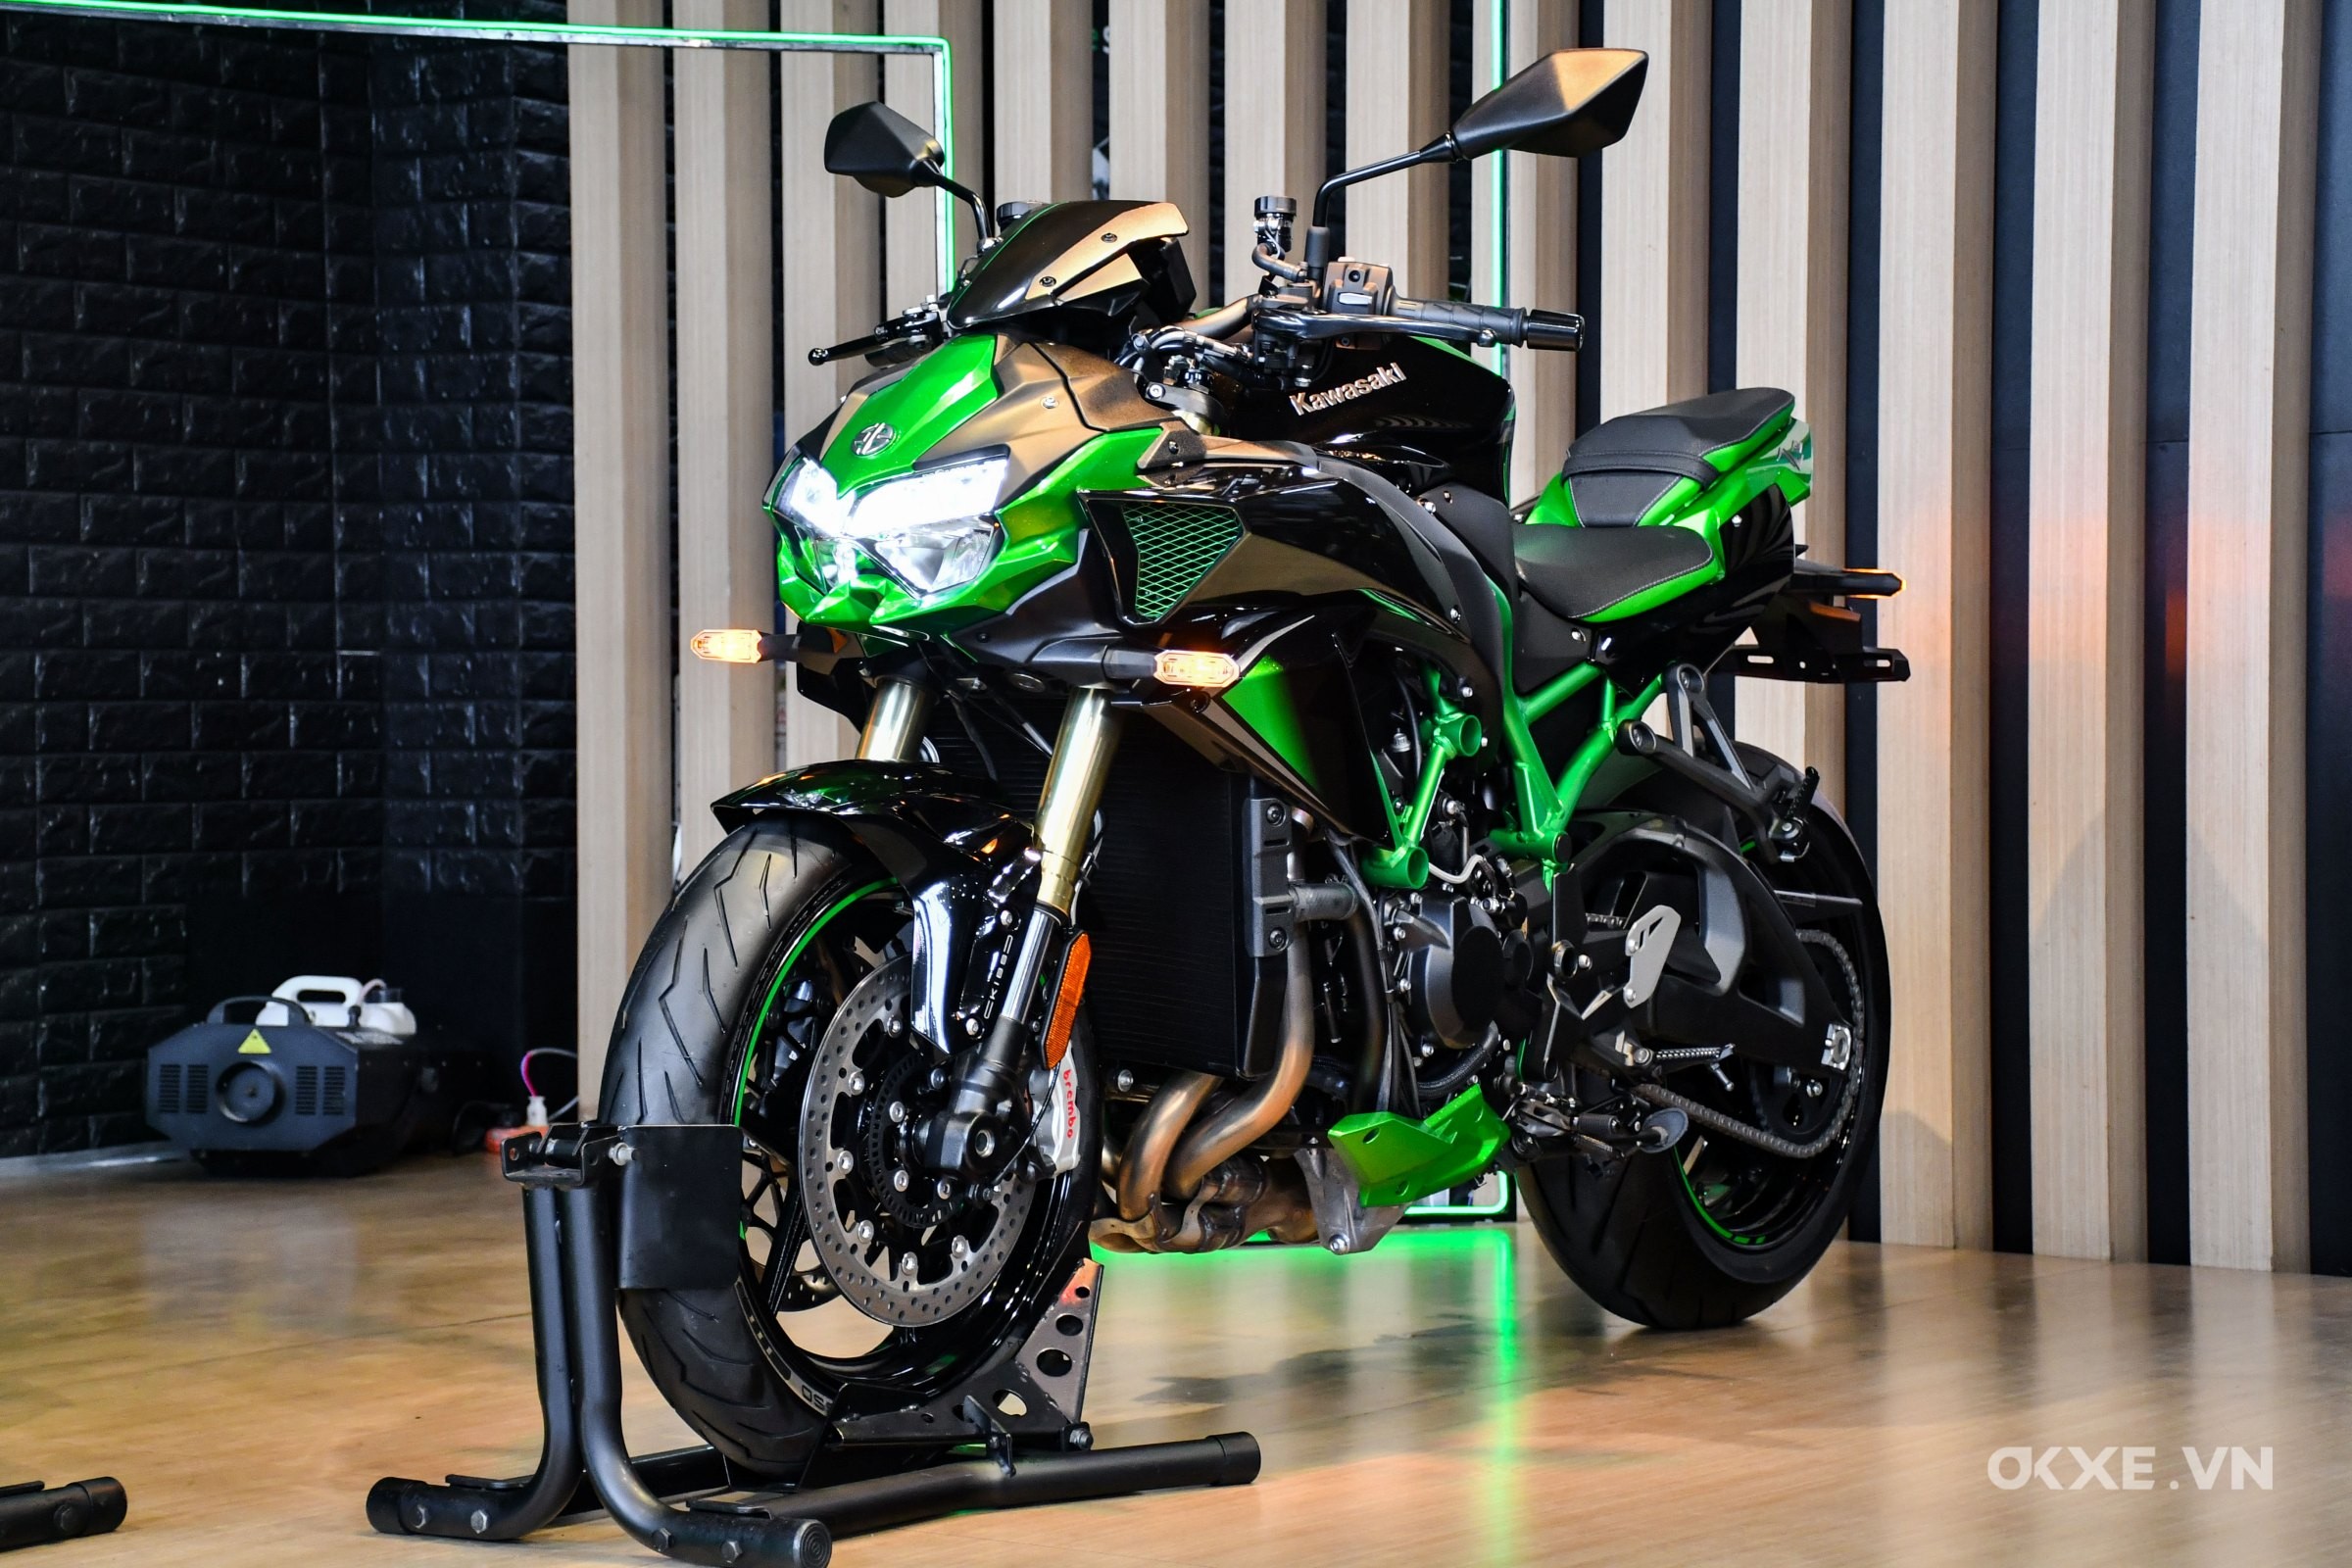 Đánh giá xe Kawasaki Ninja H2 2017 thông số kỹ thuật và giá bán mới nhất   Danhgiaxe